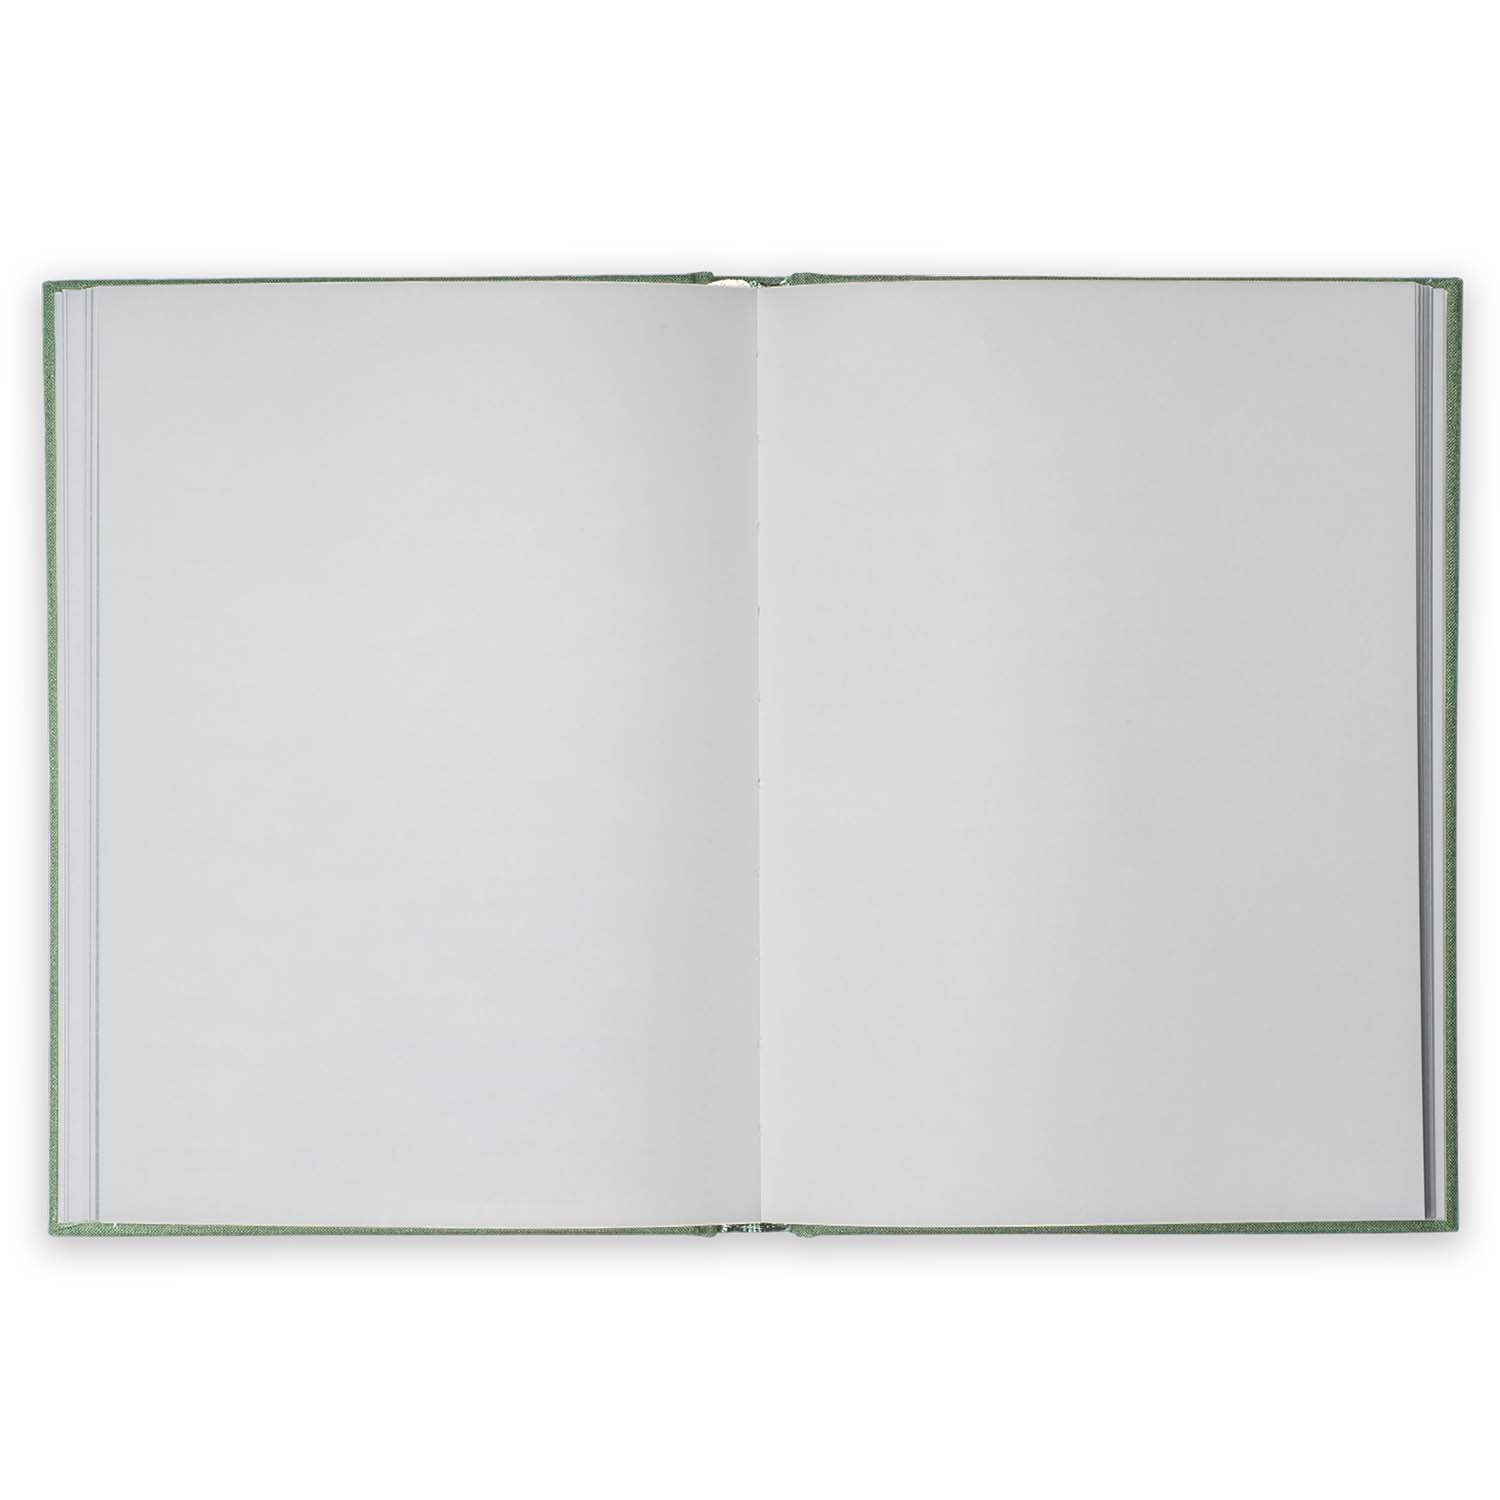 Kartotek Capenhagen - Hardcover Notebook - Notes Sage Green - HN-0007 - Inside Pages